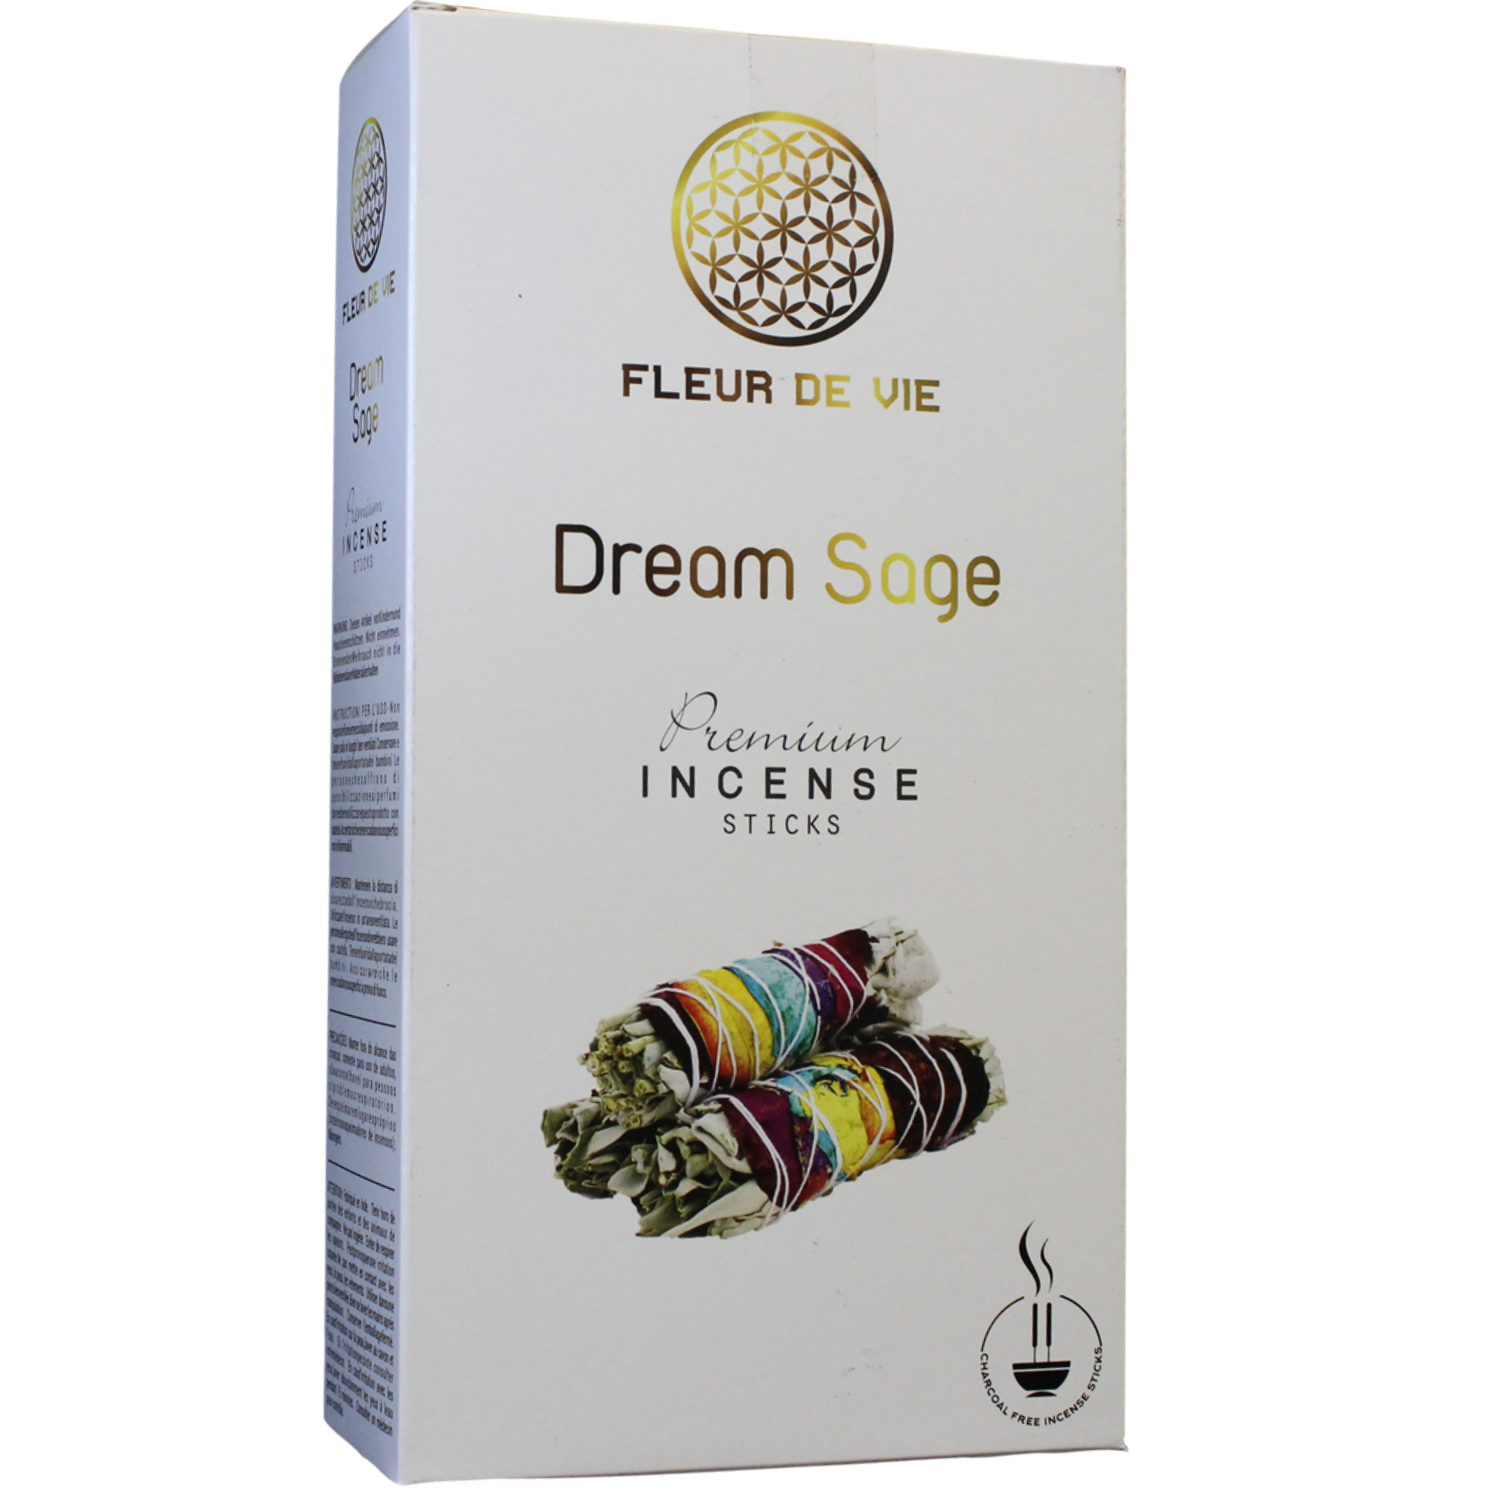 Fleur De Vie Premium Incense Sticks Choose your Option ( 1 Box-12 packs of 15g each ) or (1 Packet-15g)